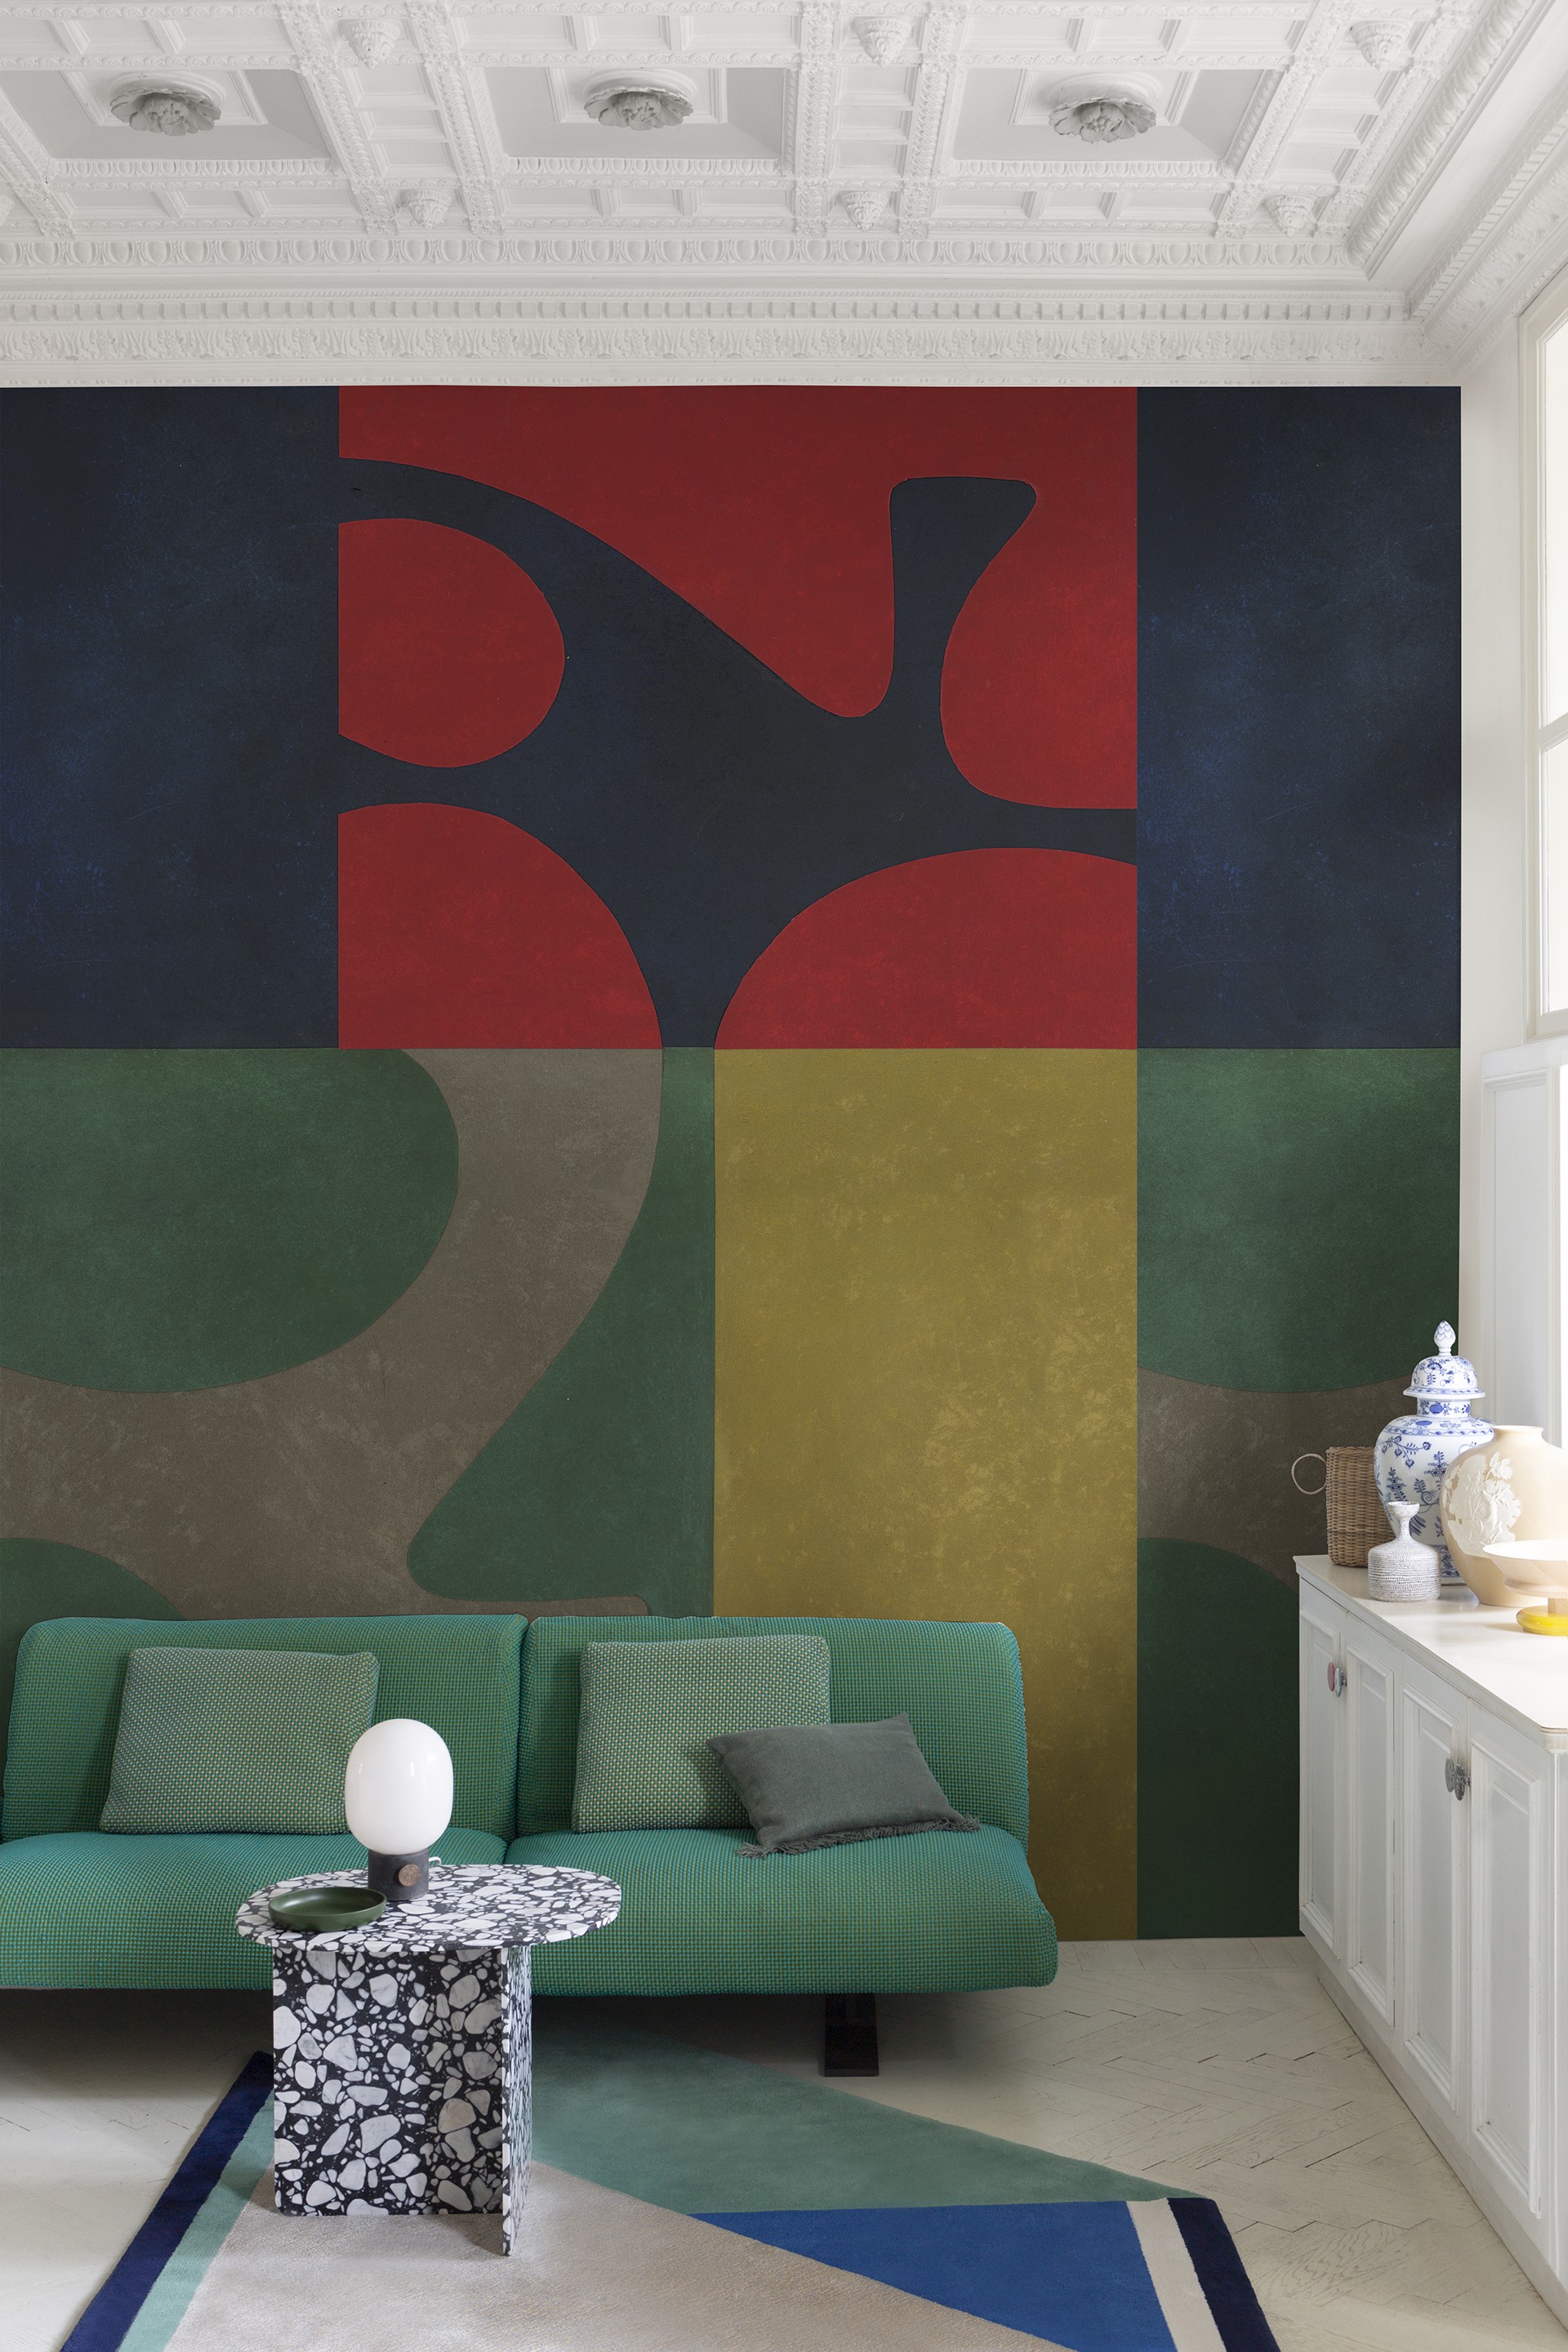 „გალერეა რუმ დიზაინი“ იტალიური ბრენდის Wall&Deco-ს ოფიციალური პარტნიორია